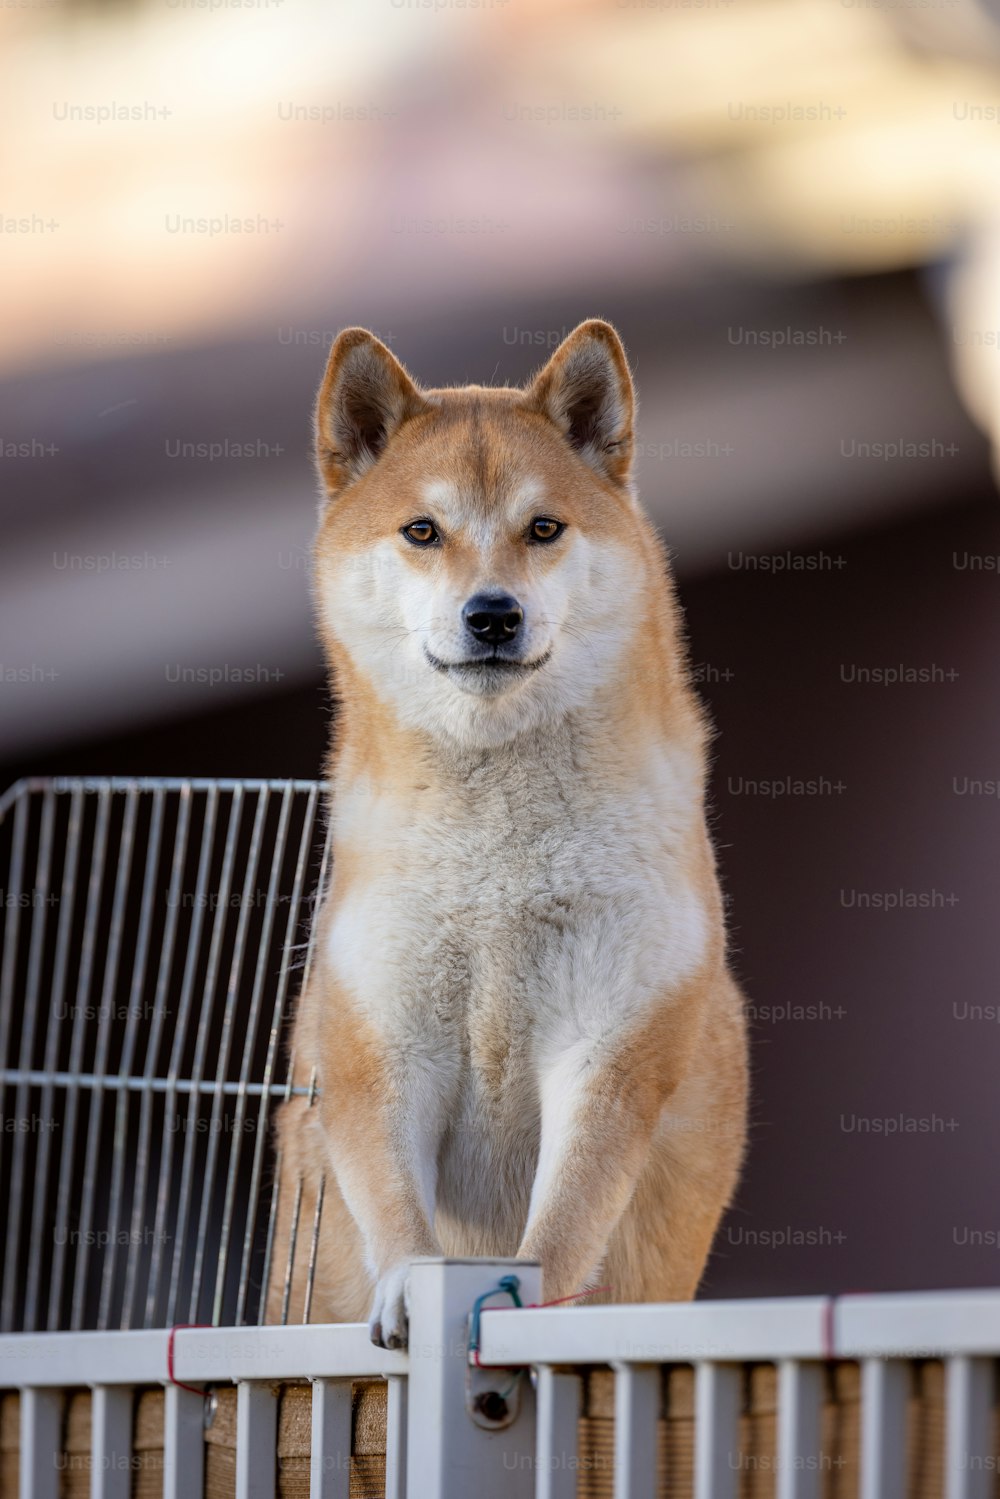 Un perro parado encima de una cerca de metal